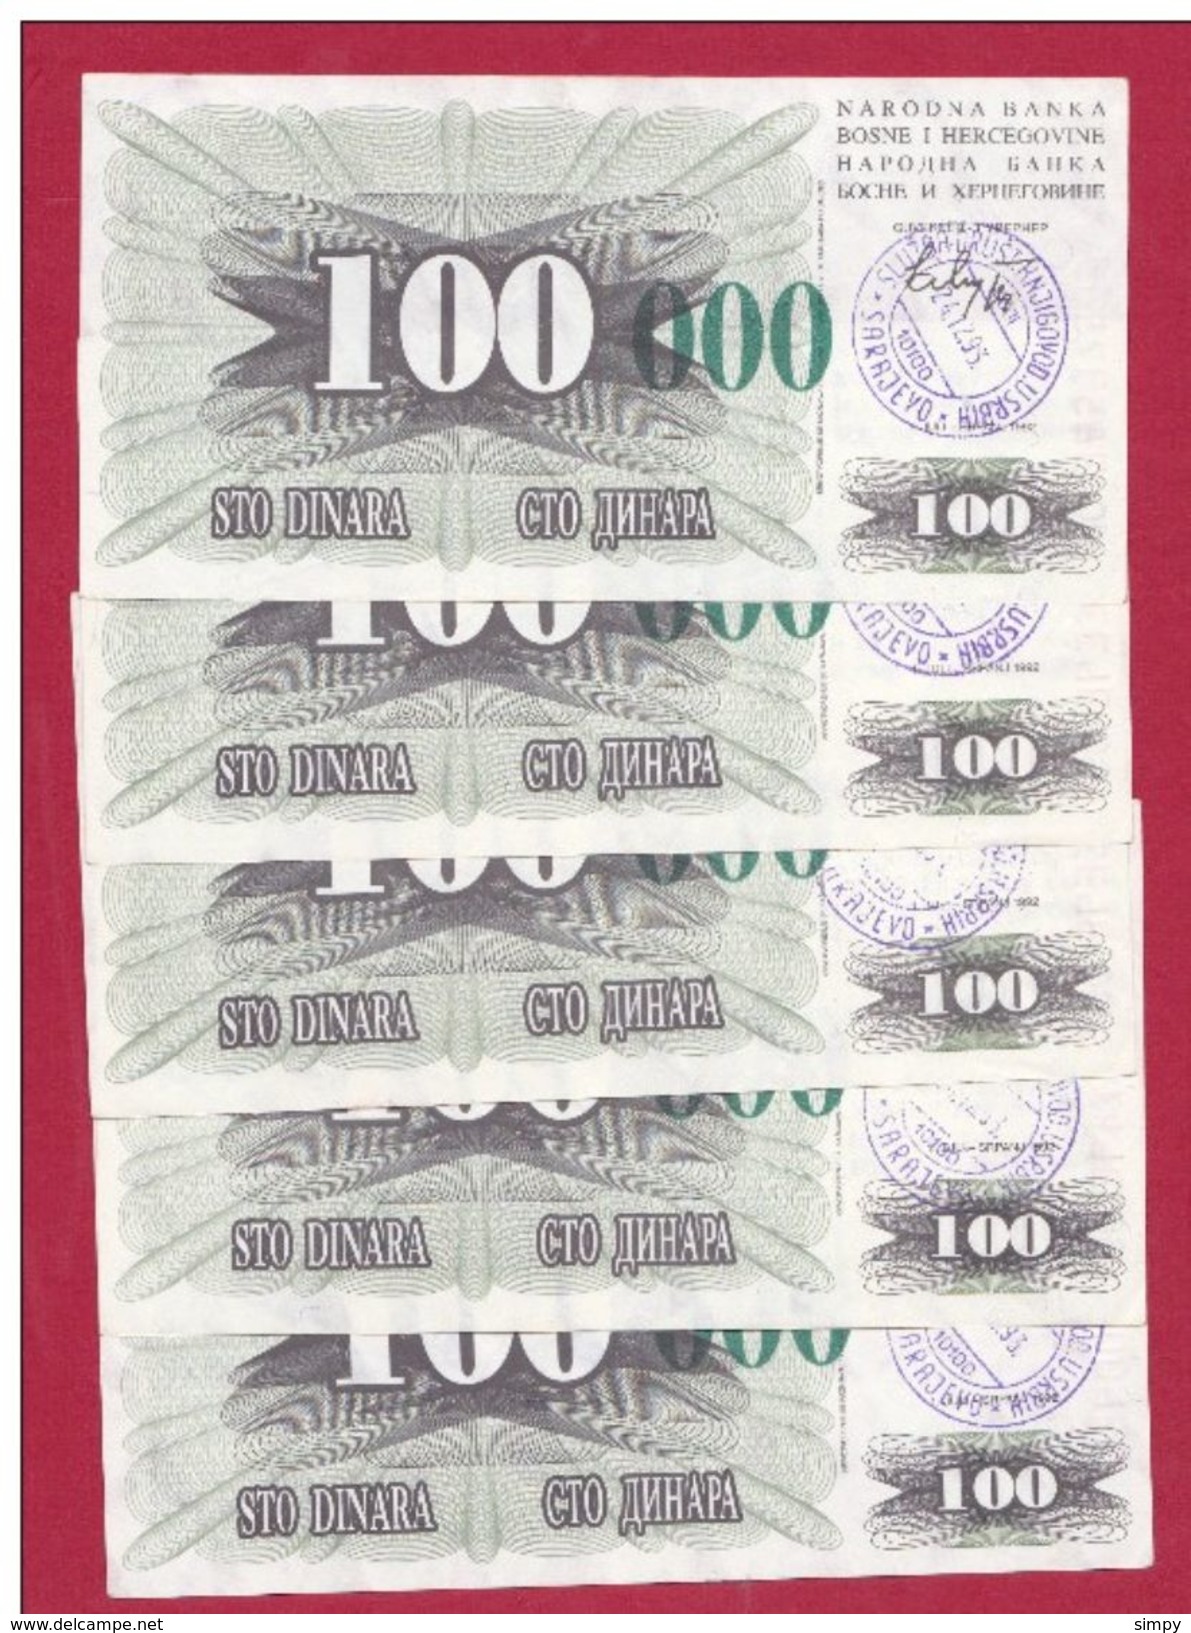 BOSNIA  5x 100.000 Dinara 24.12.1993 Pick 56g  Handstamp Sarajevo - Bosnia And Herzegovina